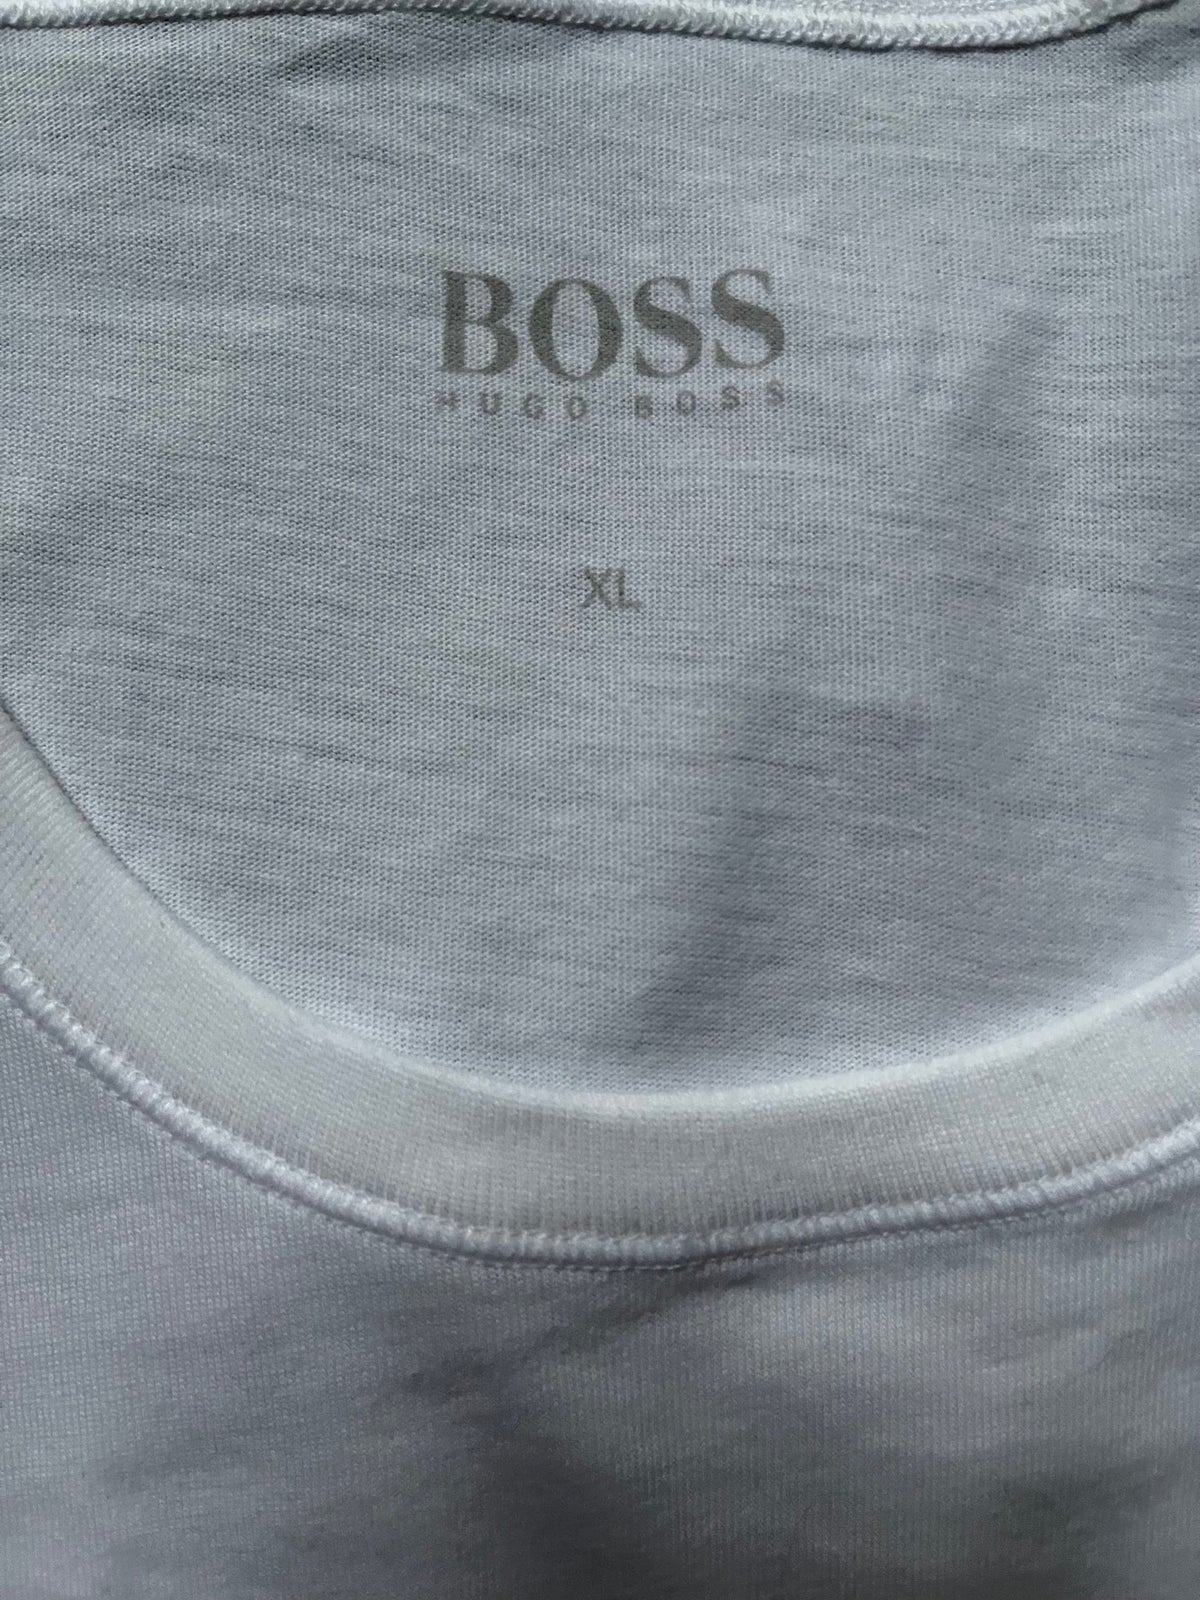 T-shirt, Hugo Boss, str. XL